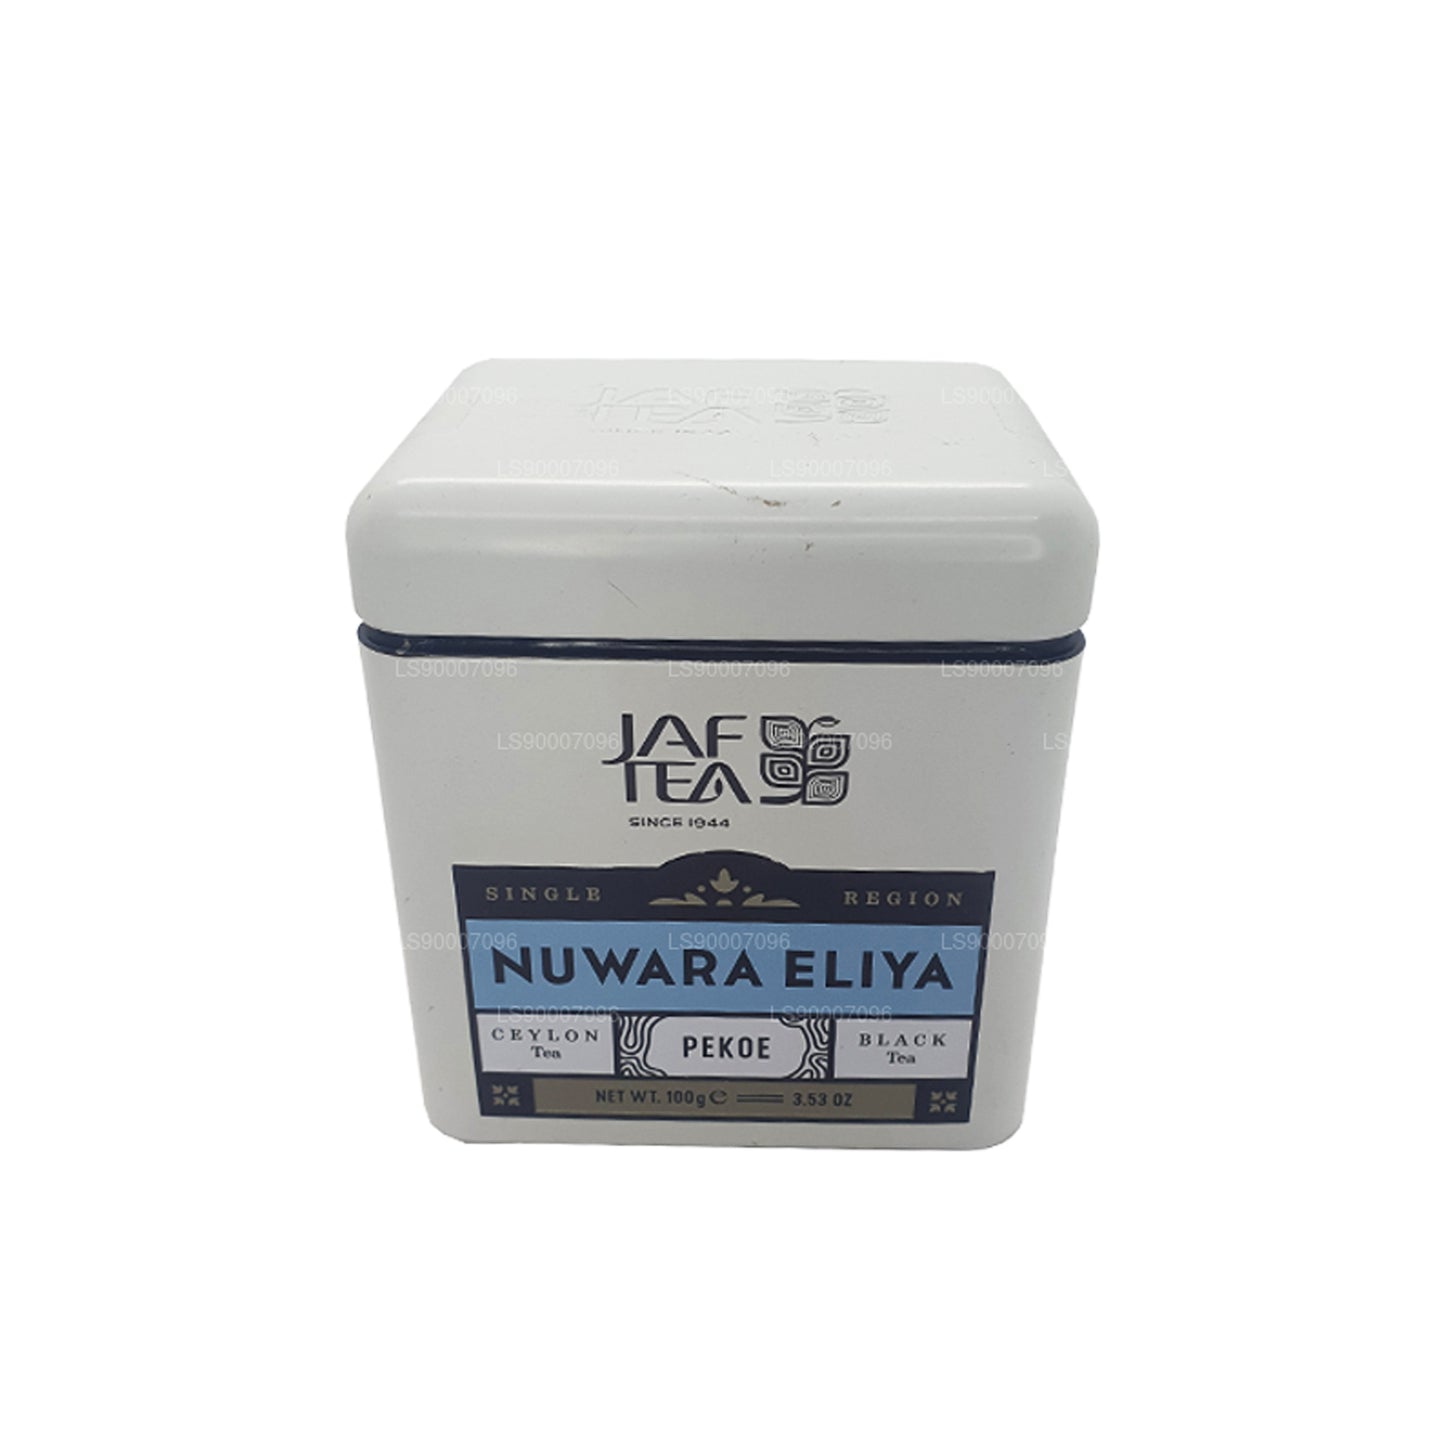 Jaf Tea 单区系列 Nuwara Eliya PEKOE (100g) Tin